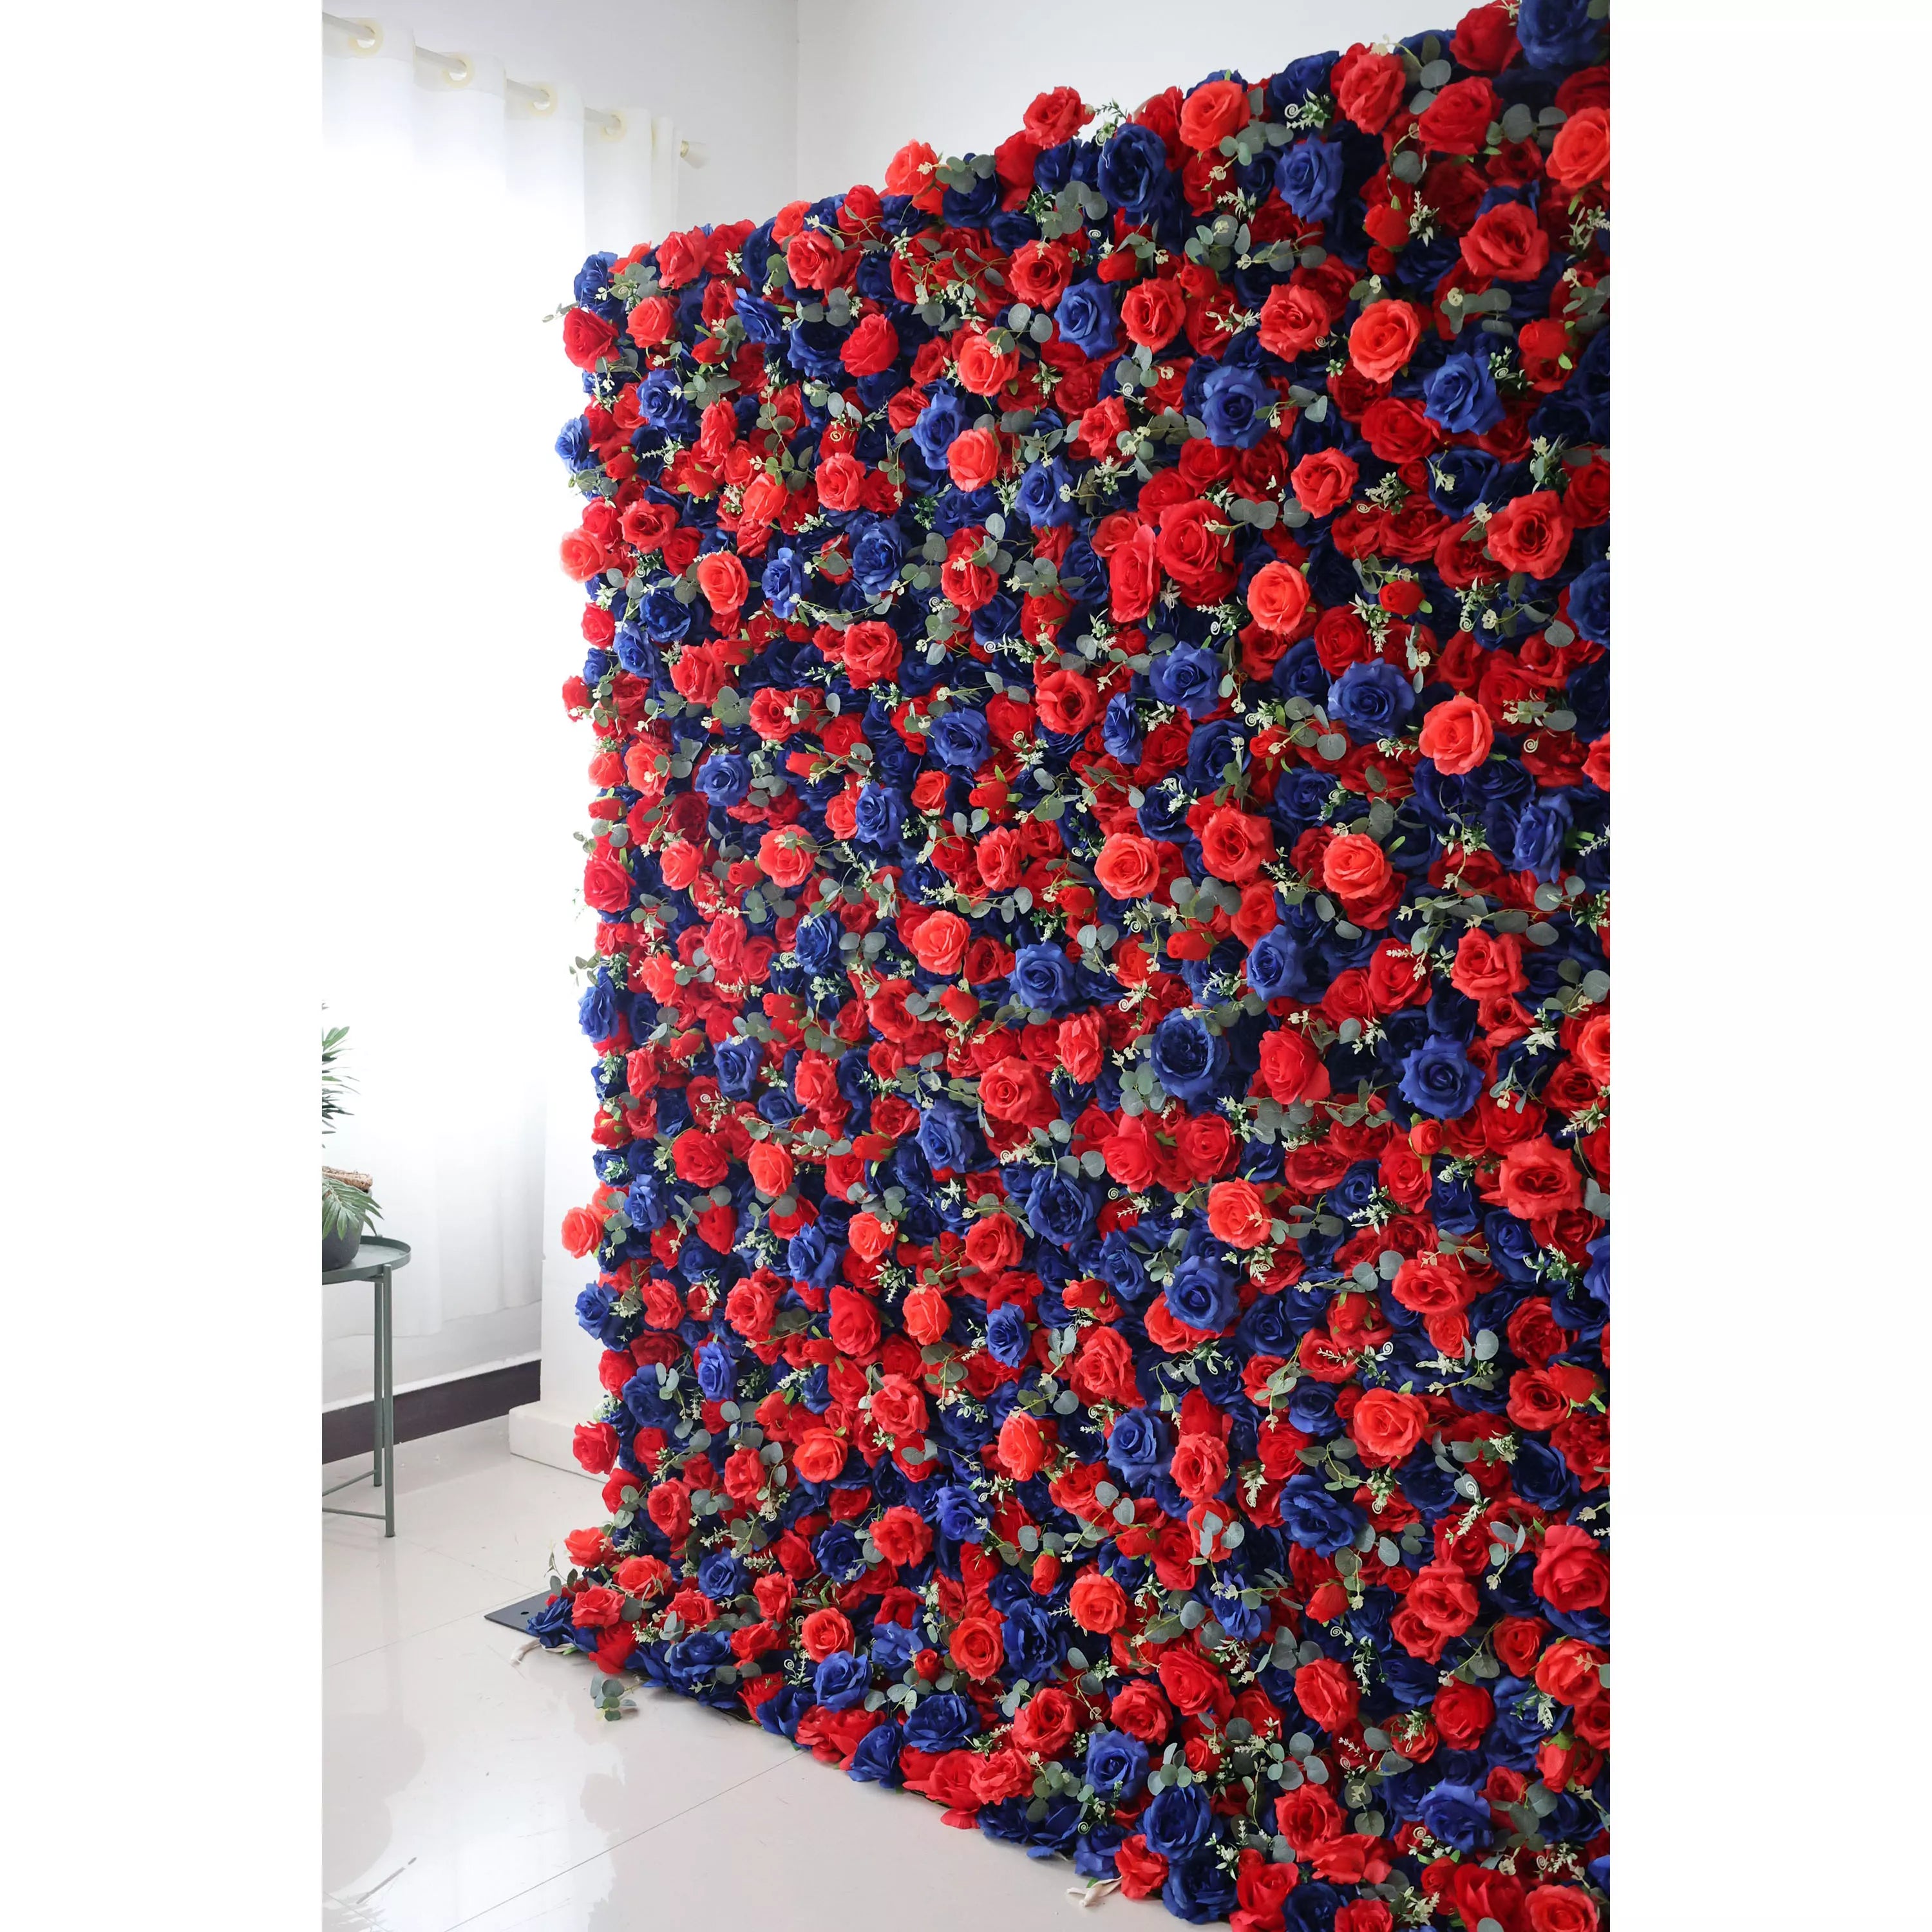 خلفية جدارية زهور أزهار فالارز: رومانسية ملكية: مزيج من أزرق منتصف الليل ومزينة بألوان متأنقة